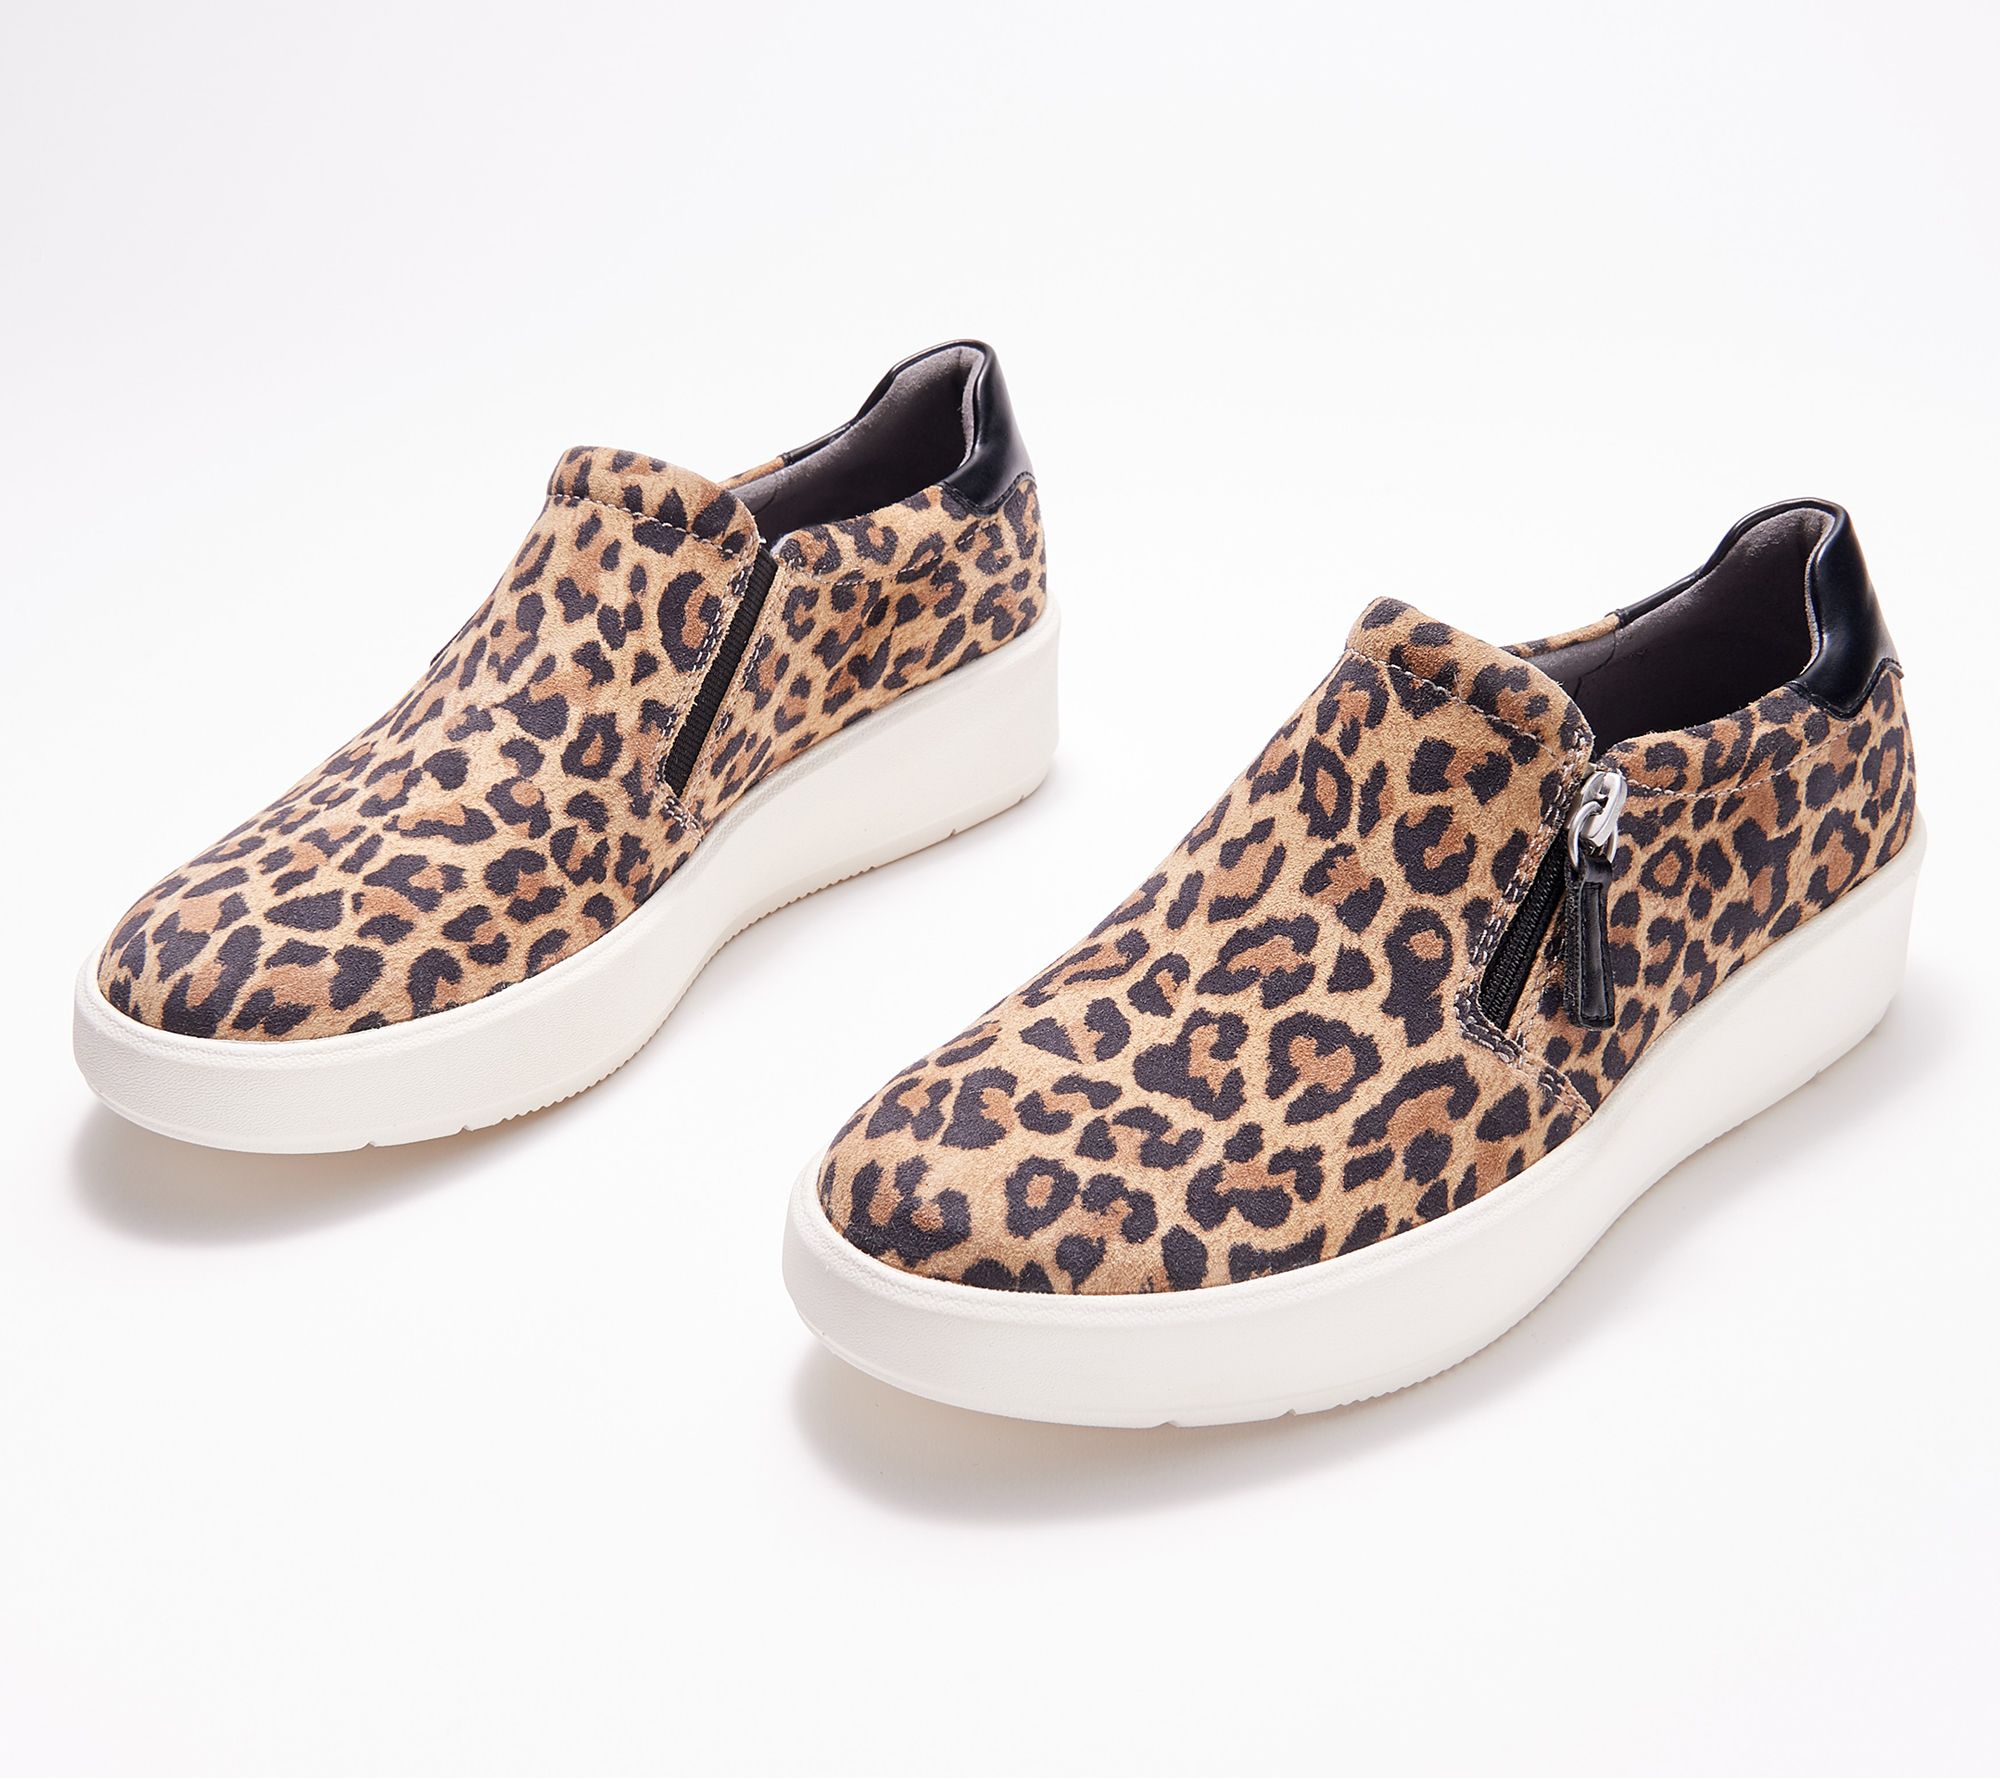 clarks leopard sneakers